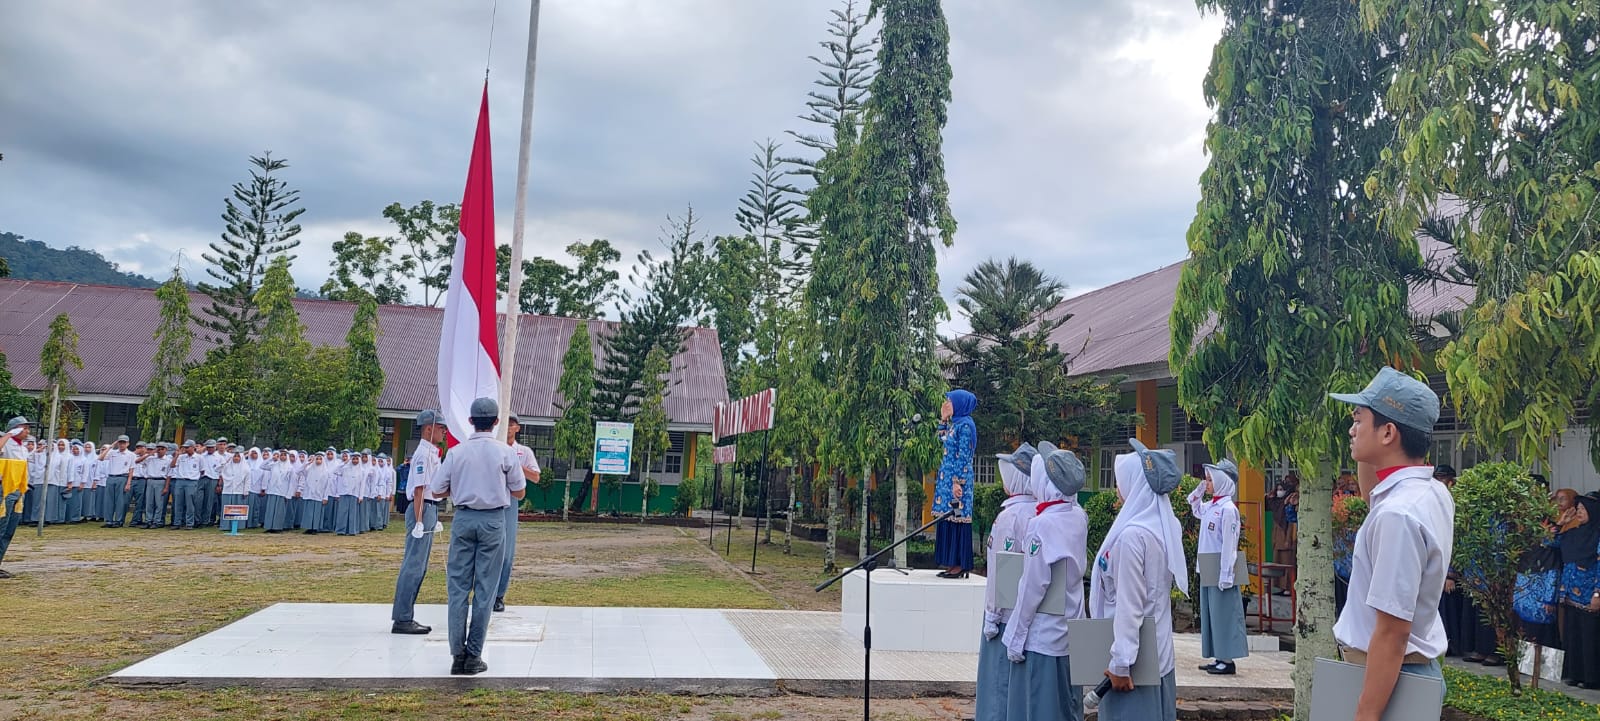 SMAN 7 Padang laksanakan  Upacara Bendera dalam rangka memperingati  Hari Pendidikan Nasional